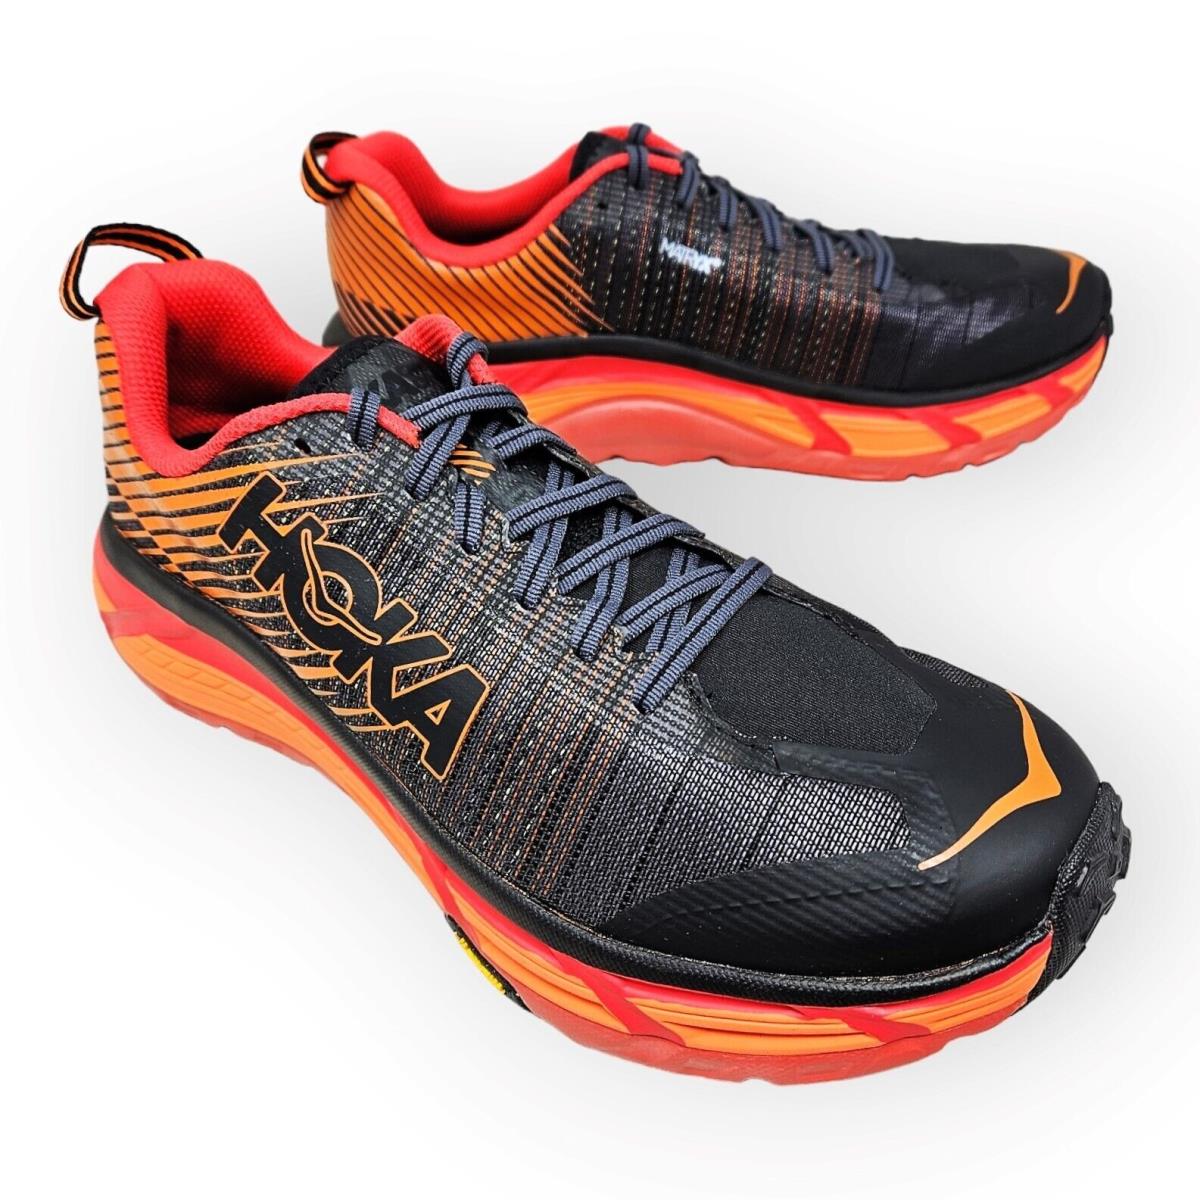 Hoka One One - Evo Mafate 2 Trail Running Shoes Red Orange Black